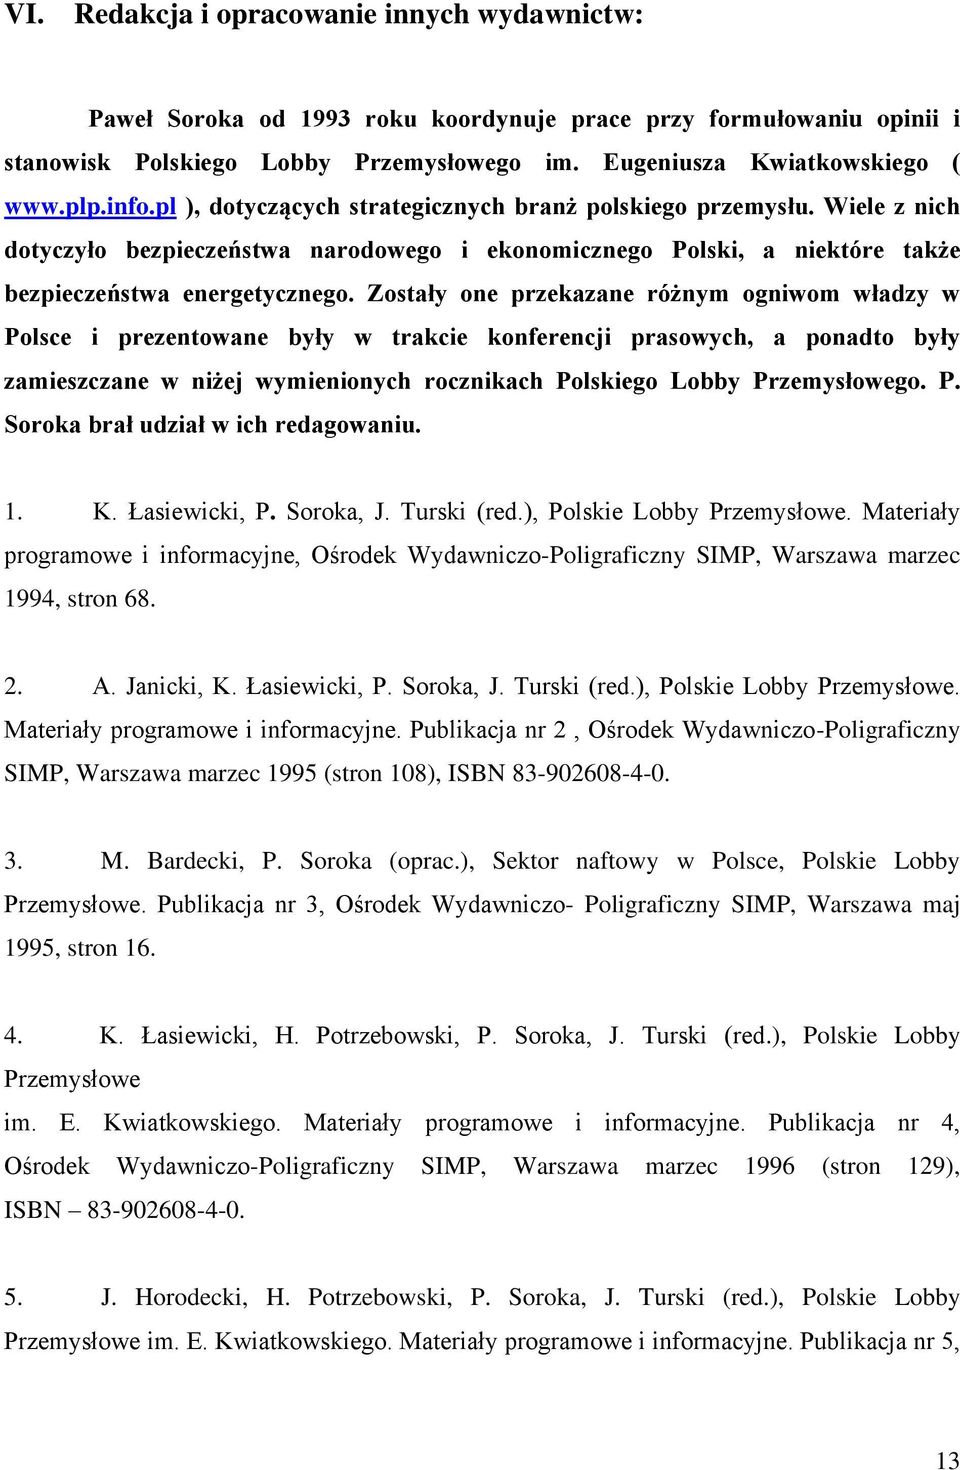 Zostały one przekazane różnym ogniwom władzy w Polsce i prezentowane były w trakcie konferencji prasowych, a ponadto były zamieszczane w niżej wymienionych rocznikach Polskiego Lobby Przemysłowego. P. Soroka brał udział w ich redagowaniu.